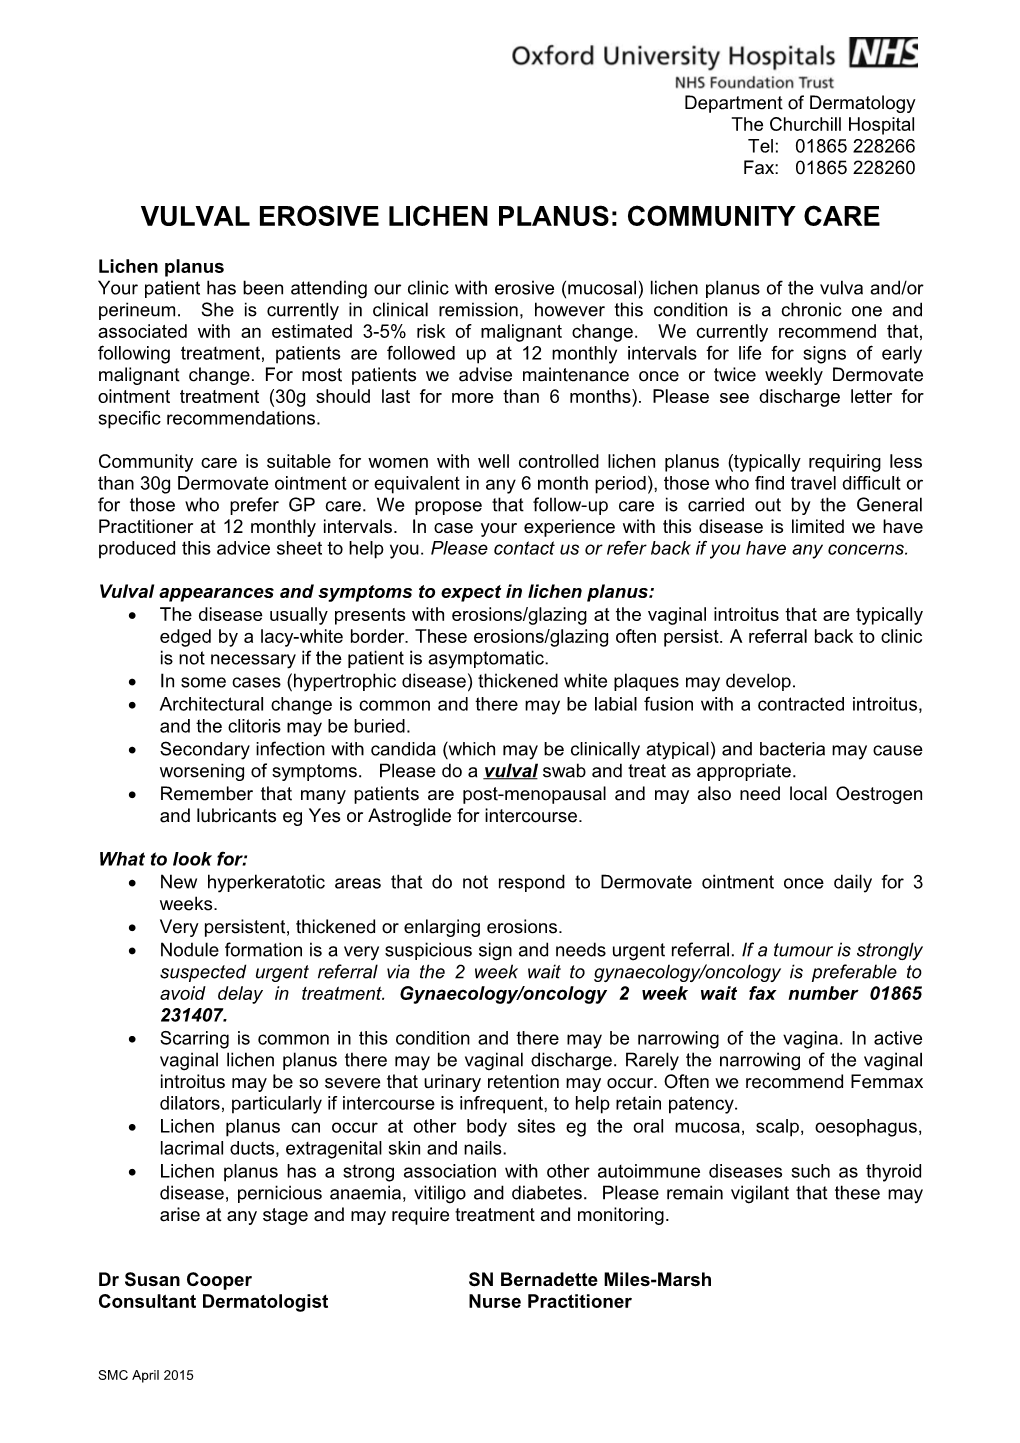 Vulval Erosive Lichen Planus: Community Care